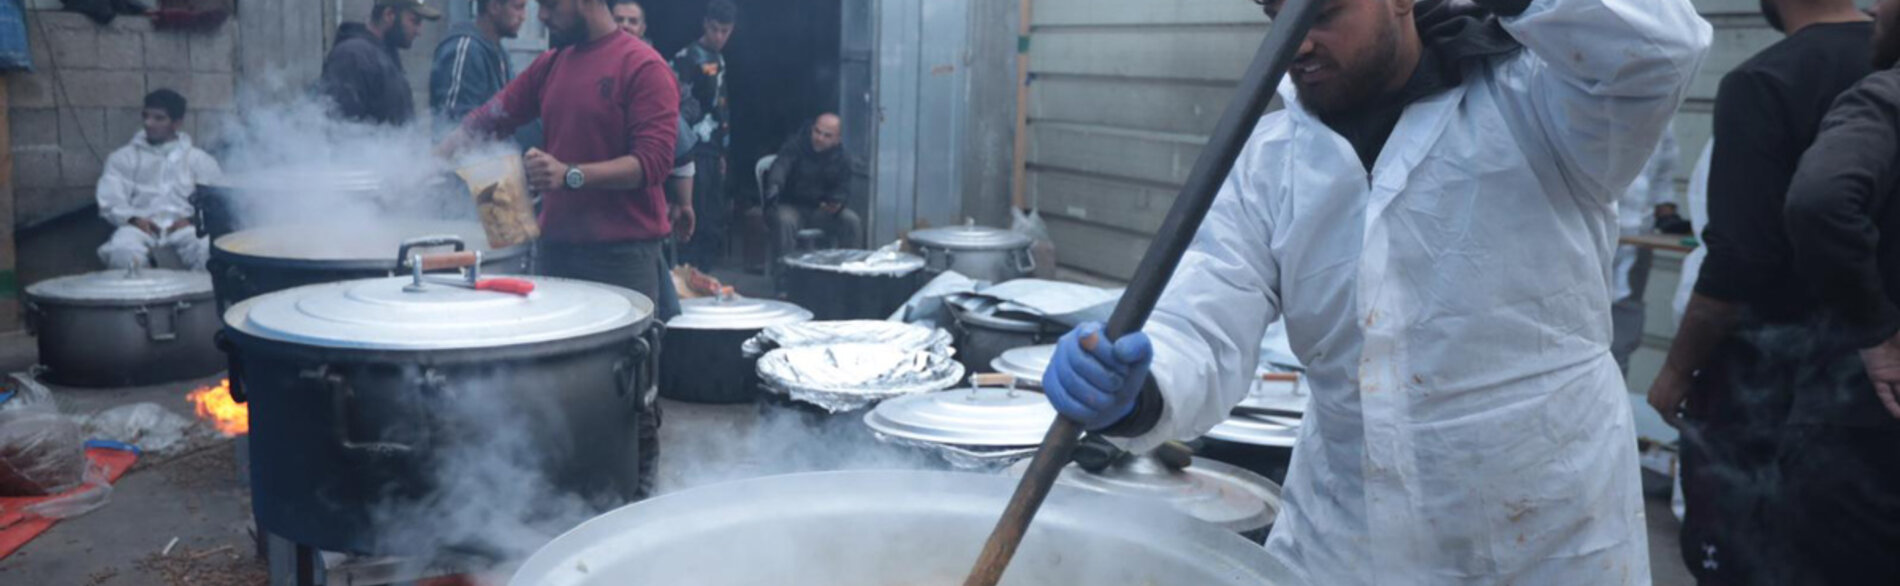 עובדים הומניטריים מכינים ארוחות אפטאר (סעודת שבירת צום הרמדאן,) חמות למשפחות עקורות בדרום עזה. מיזם זה, המיושם על ידי הארגונים ANERA ו-World Central Kitchen, הוא אחד מ-122 מיזמי סיוע  שהקרן ההומניטרית לשטח הפלסטיני הכבוש תומכת בהם עכשיו. צילום: ANERA